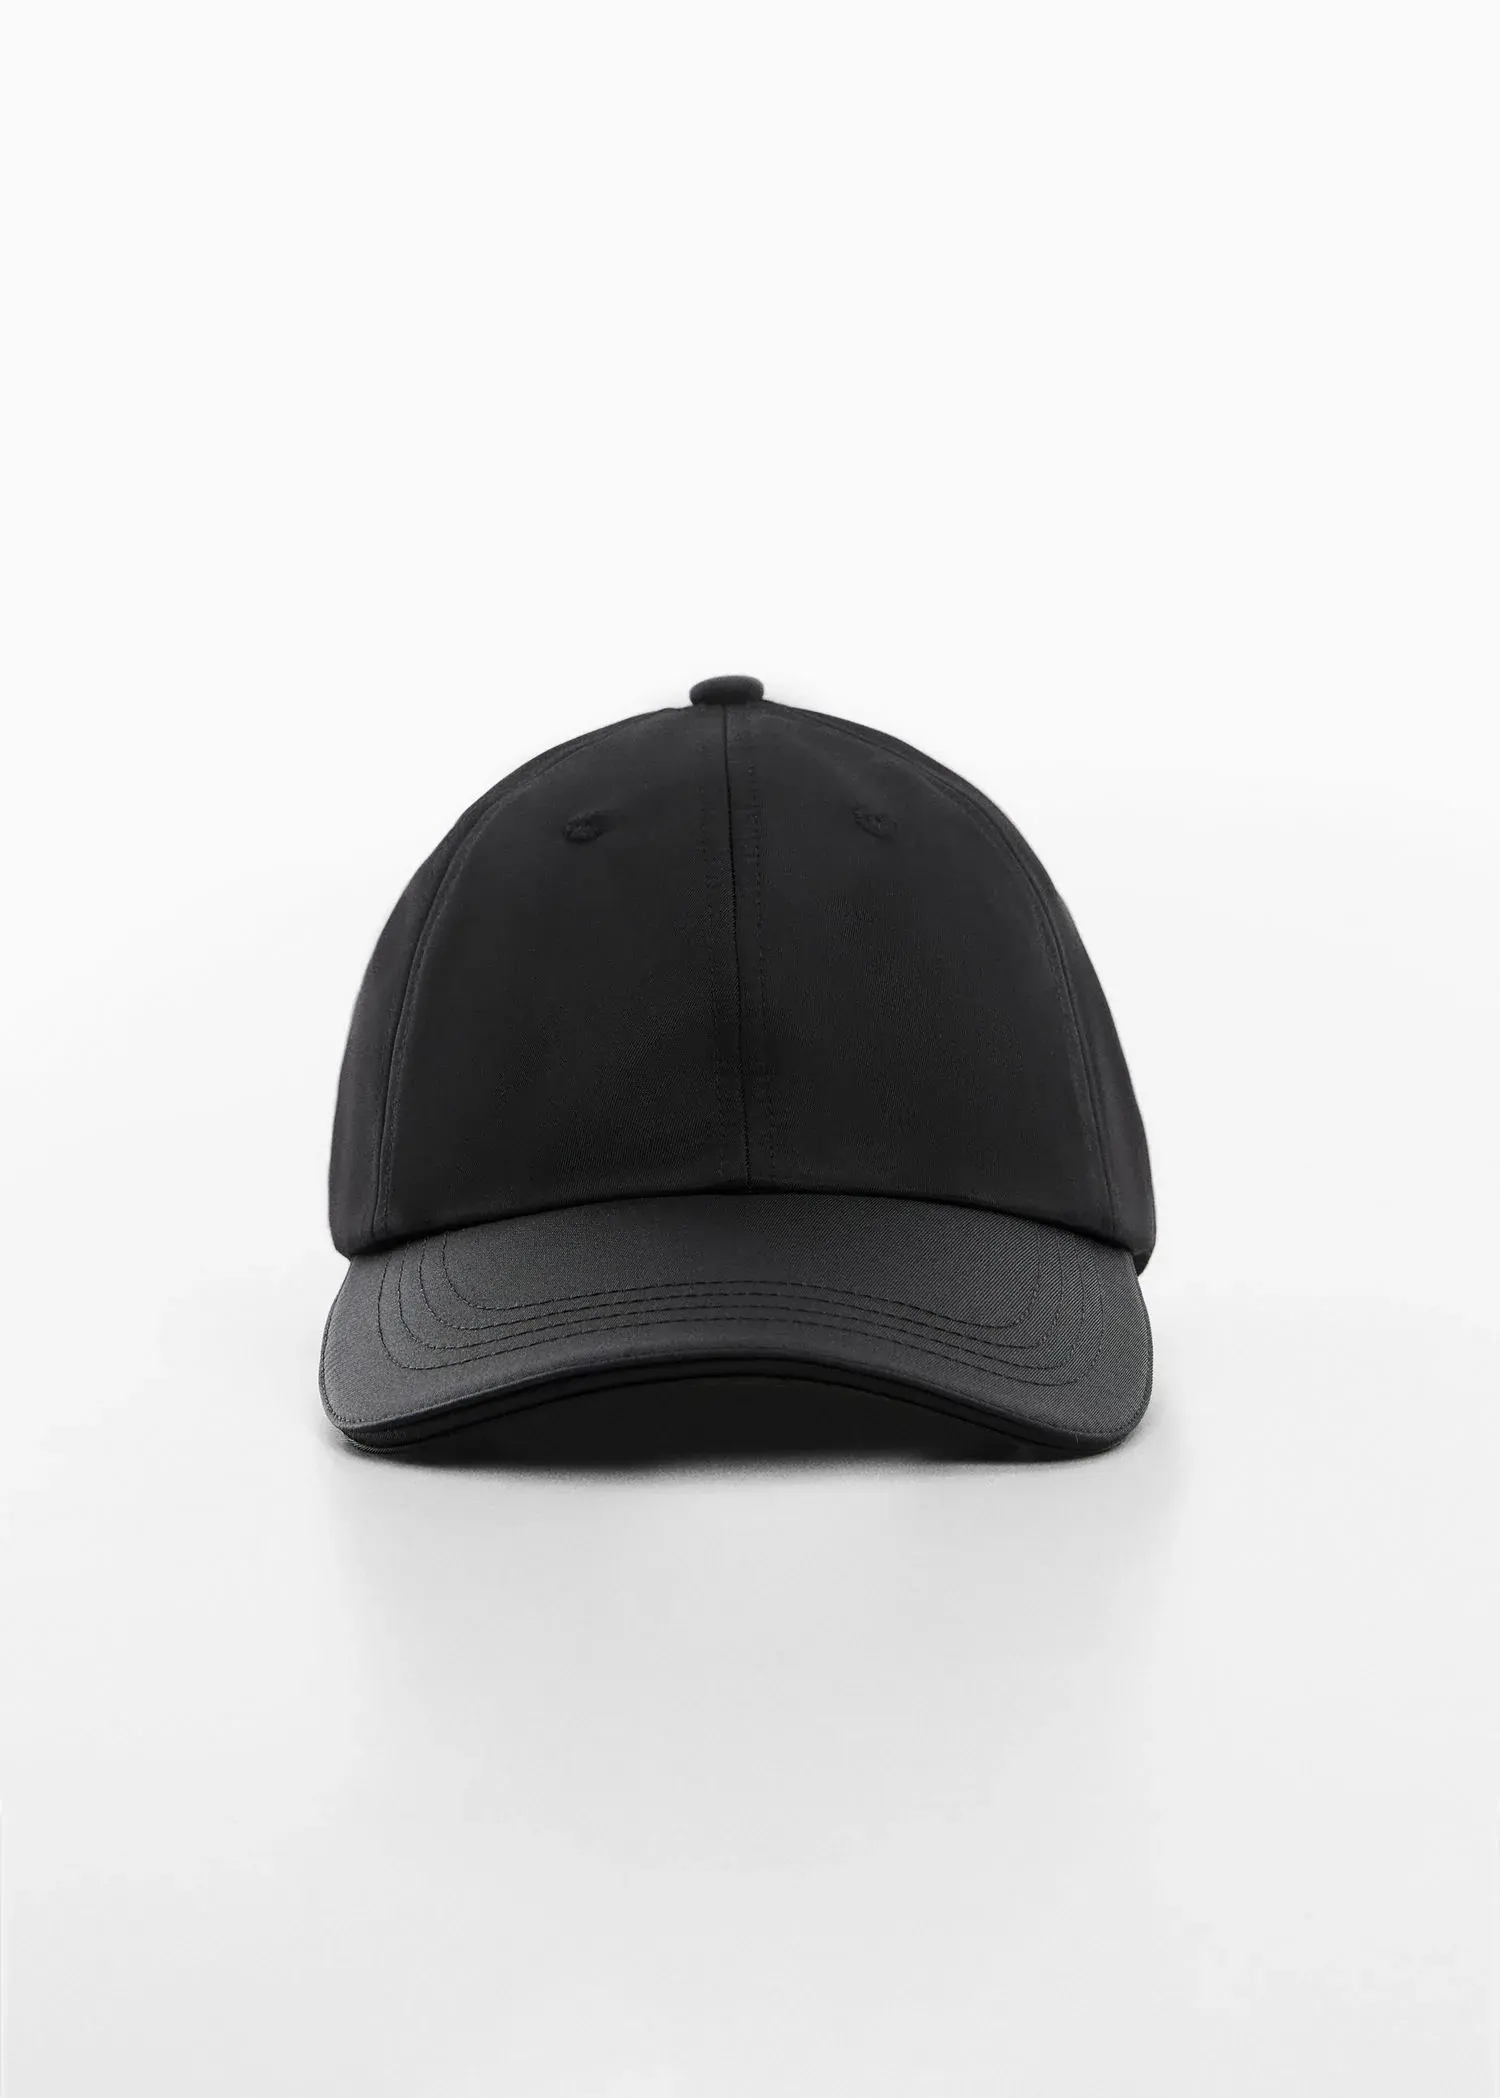 Mango Soft visor cap. 2